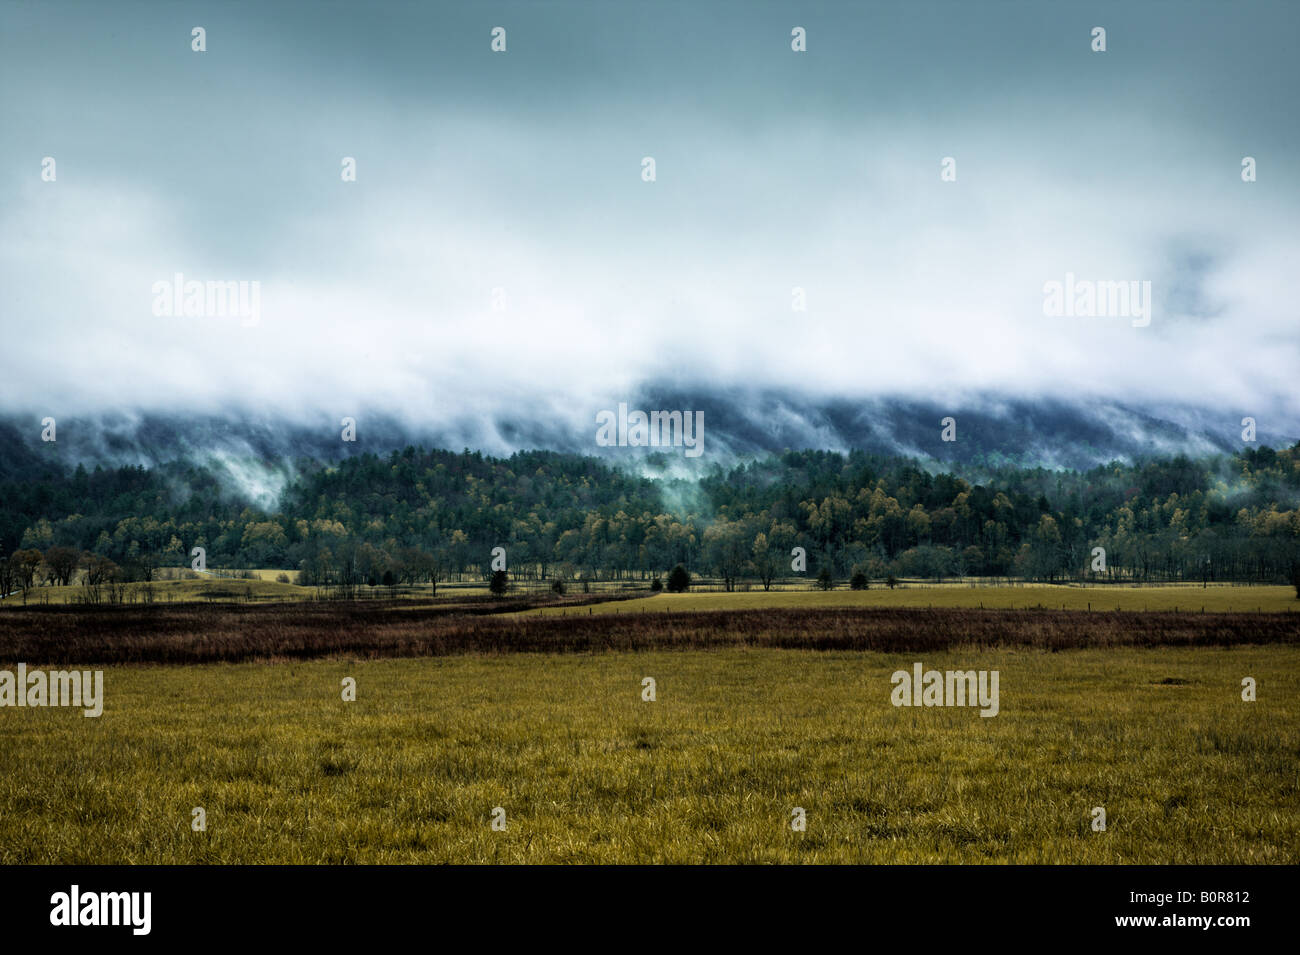 Hoher Dynamikbereich Bild der Smoky Mountains, benannt nach dem Nebel sind, die am Ende die Gewitter angezeigt wird. Stockfoto